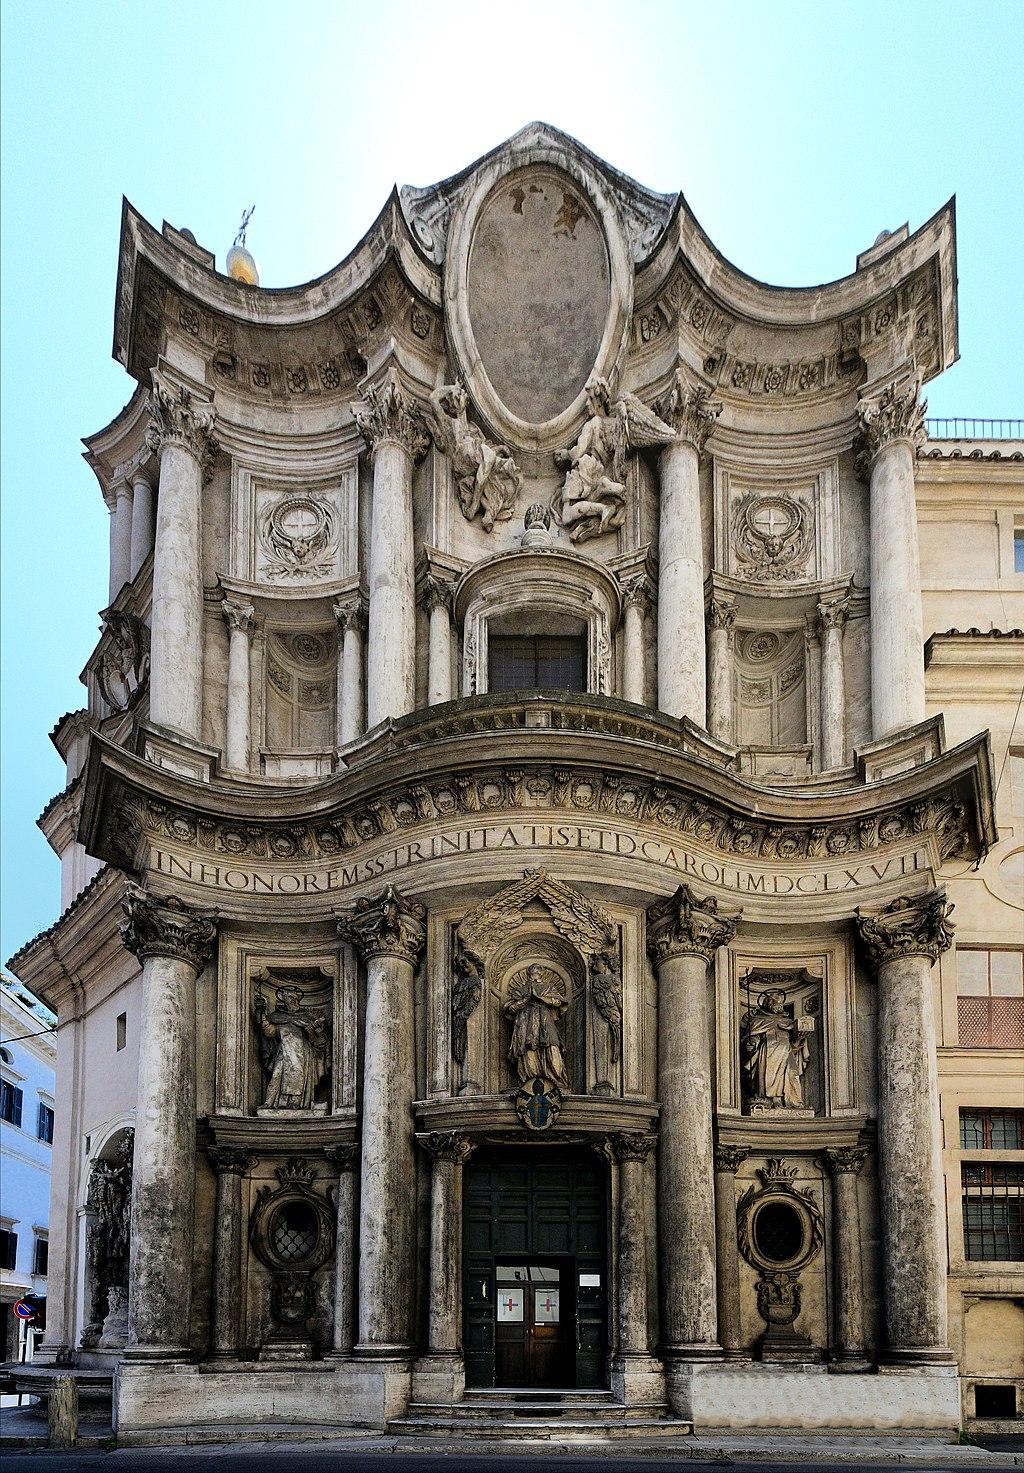 San Carlo alle Quattro Fontane church in Rome, Italy. (<a href="https://en.wikipedia.org/wiki/San_Carlo_alle_Quattro_Fontane#/media/File:San_Carlo_alle_Quattro_Fontane_-_Front.jpg">Architas</a>/CC BY-SA 4.0)